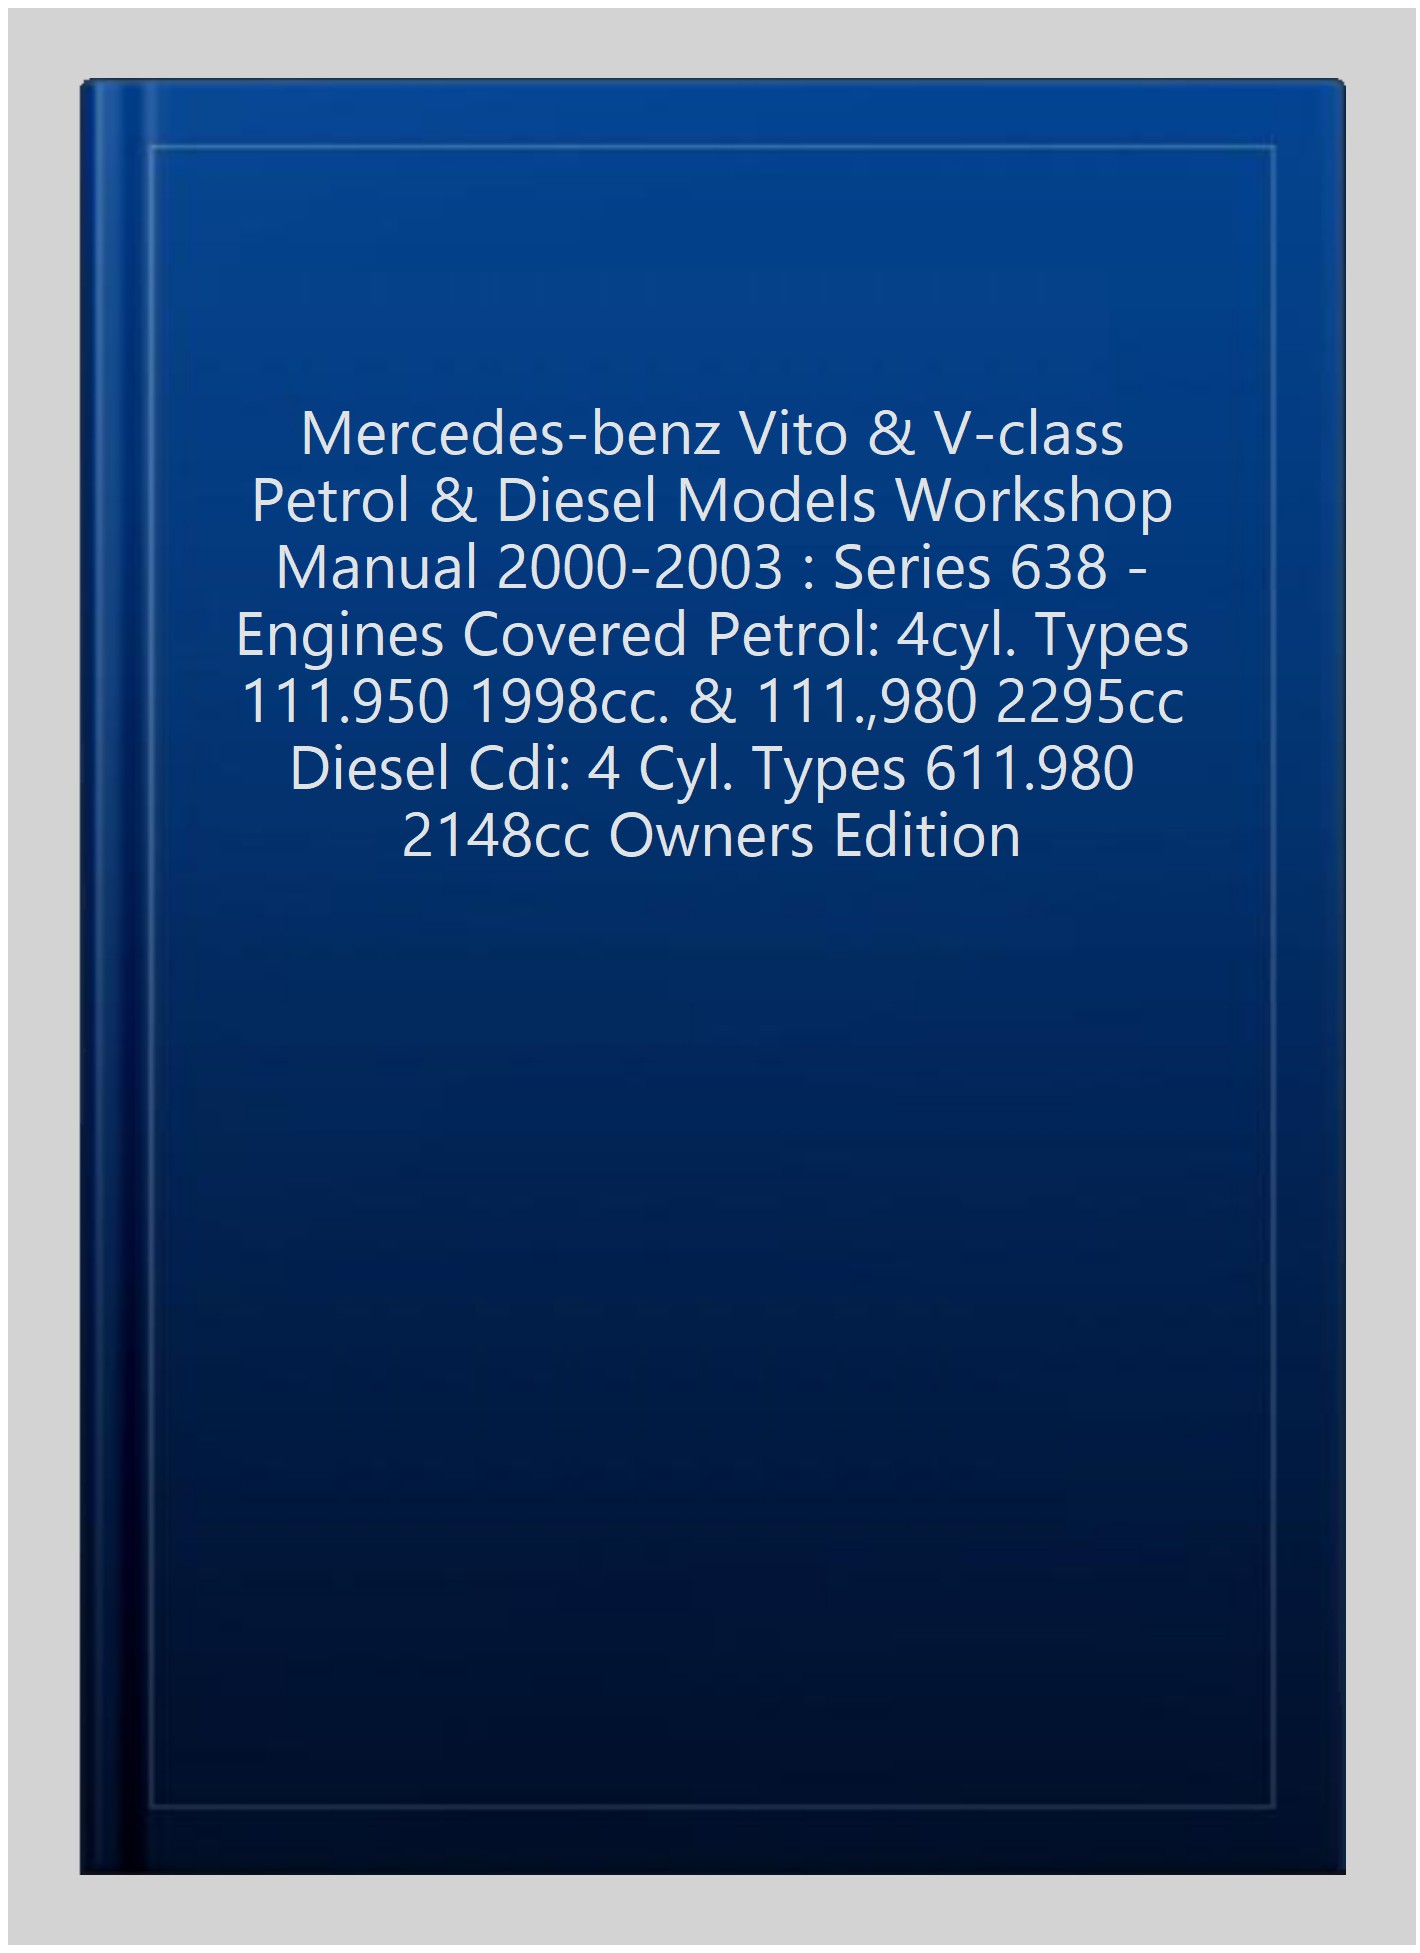 Mercedes-Benz Vito & V-Class Petrol & Diesel Models Workshop Manual 2000-2003 